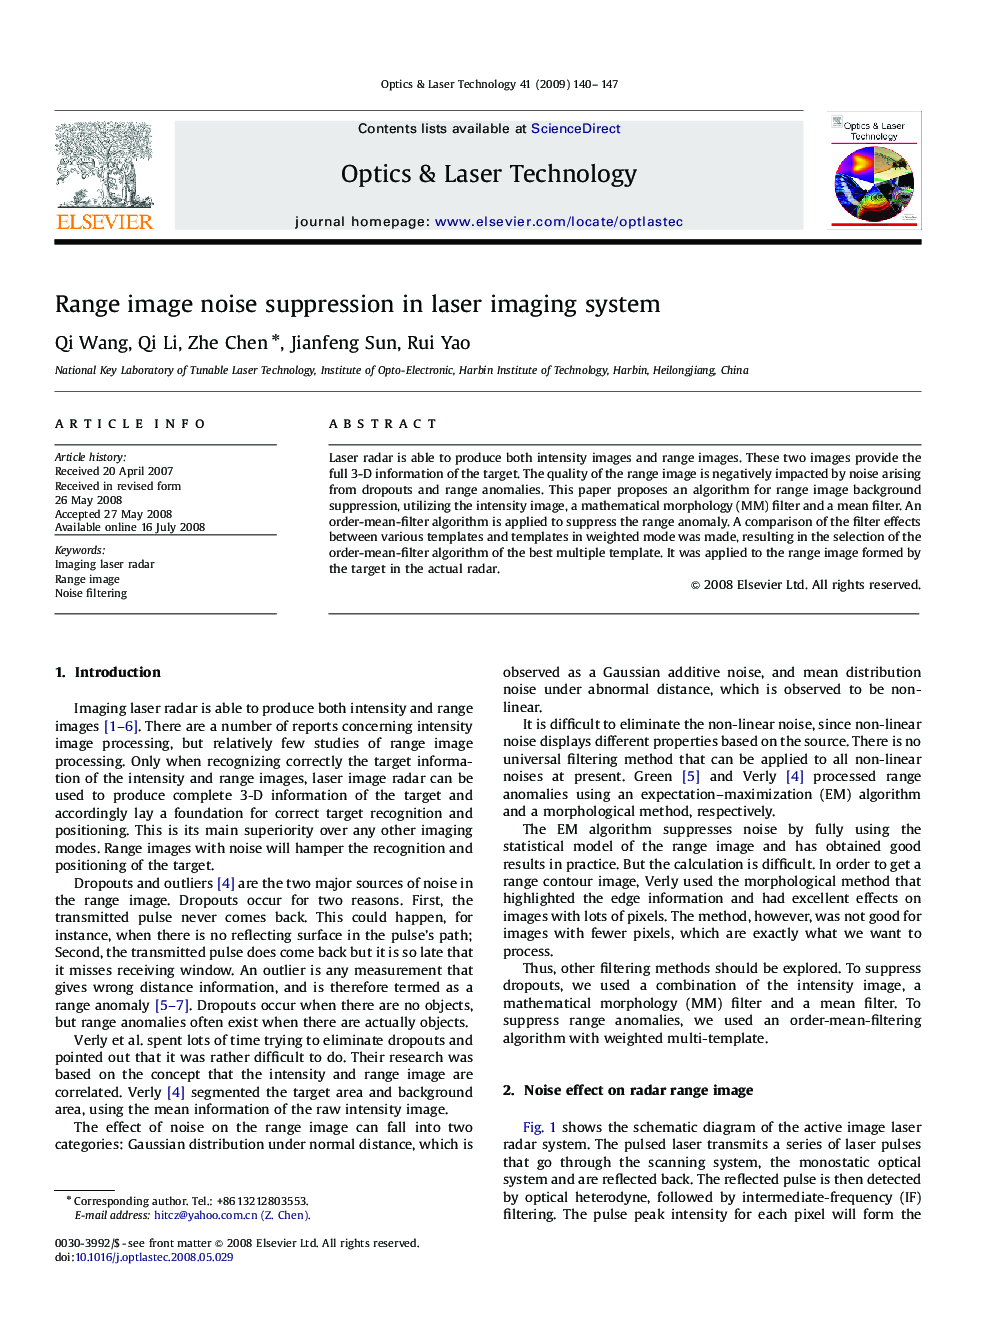 Range image noise suppression in laser imaging system